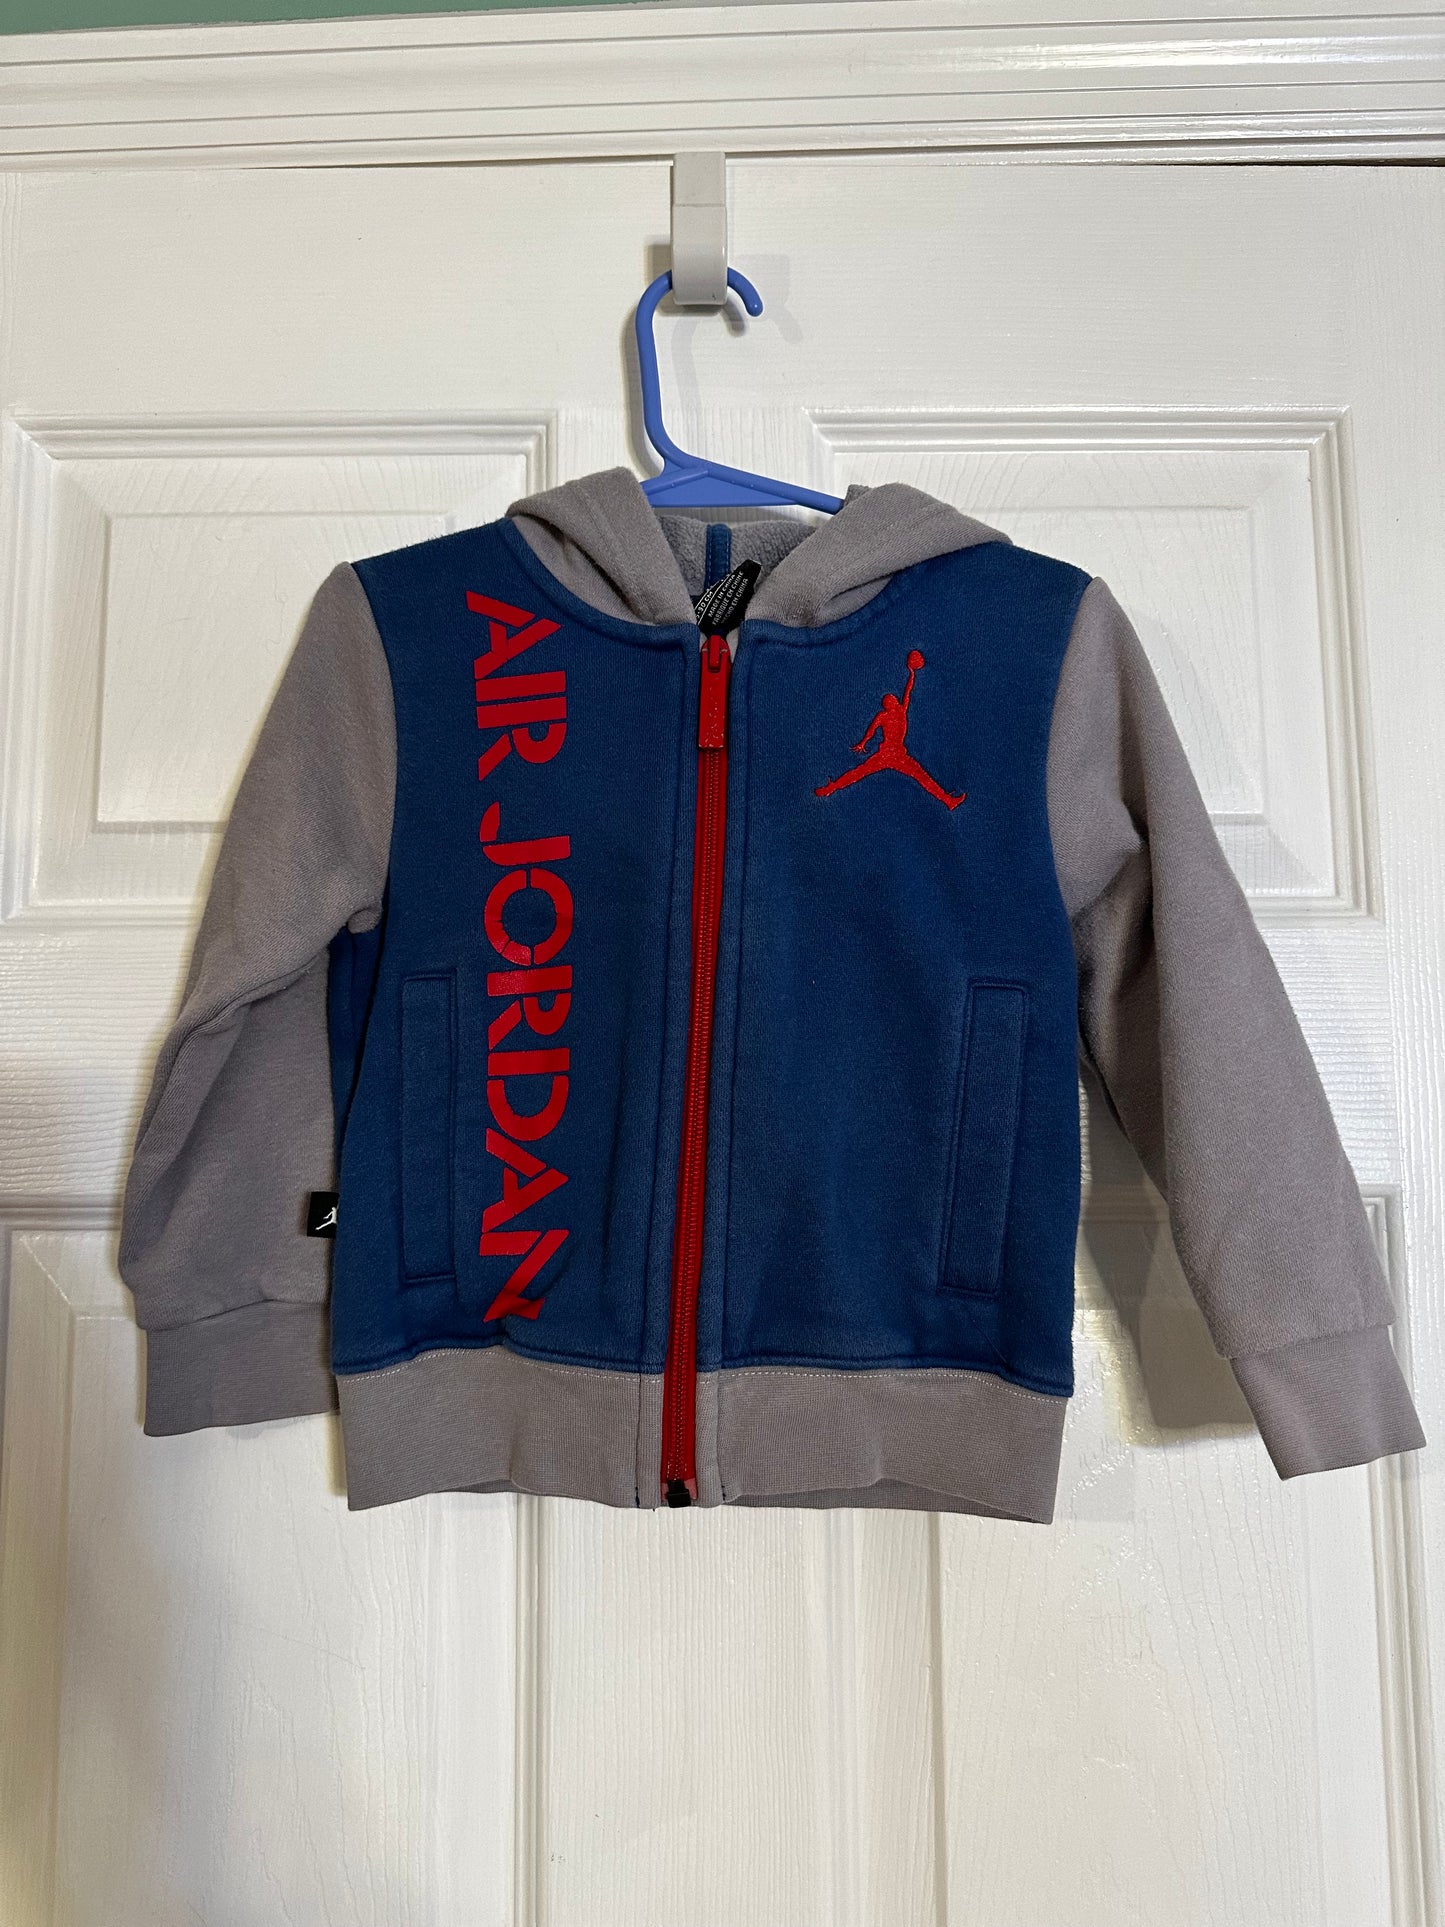 2T Boy's Jordan Jacket